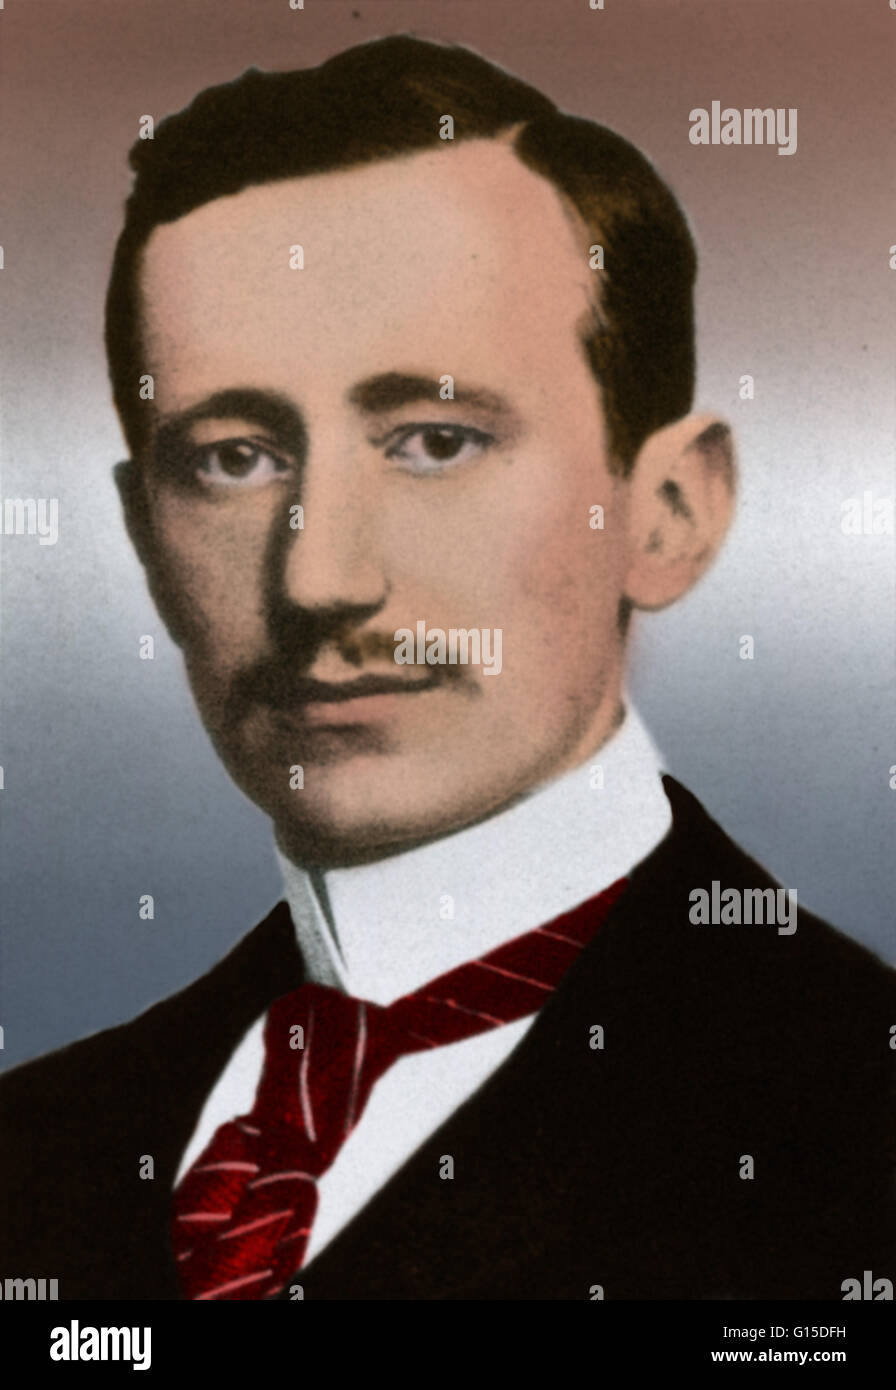 Guglielmo Marconi (25 avril 1874 - 20 juillet 1937) était un inventeur  italien, connu comme le père de la transmission radio à longue distance et  pour son développement de la loi de